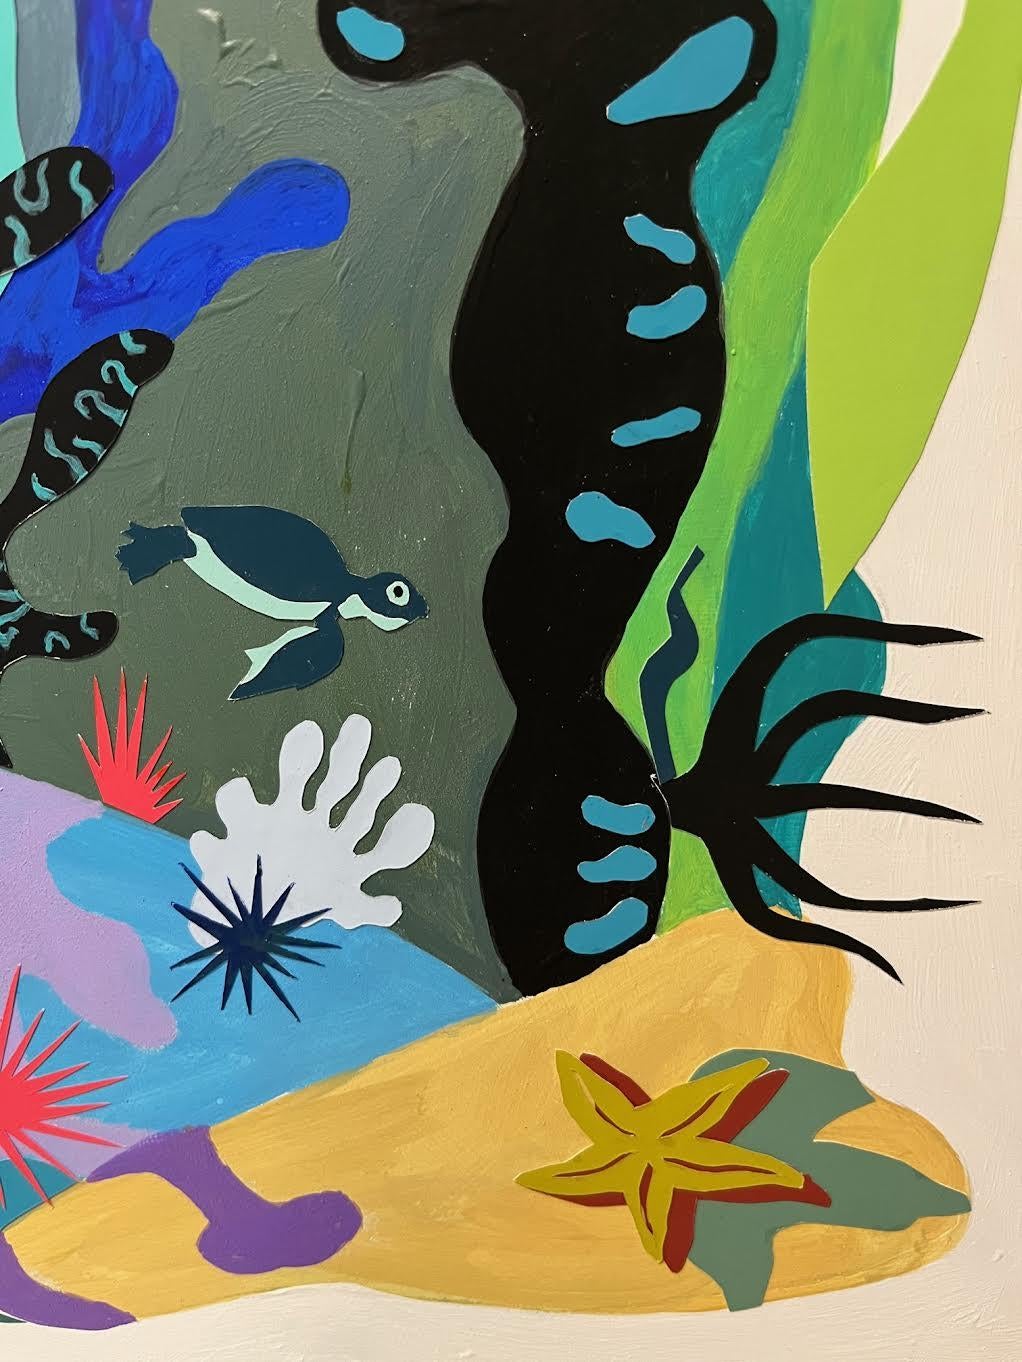 Sous la mer, vie océanique colorée aux bords durs et aux détails ludiques - Painting de Philomena Marano